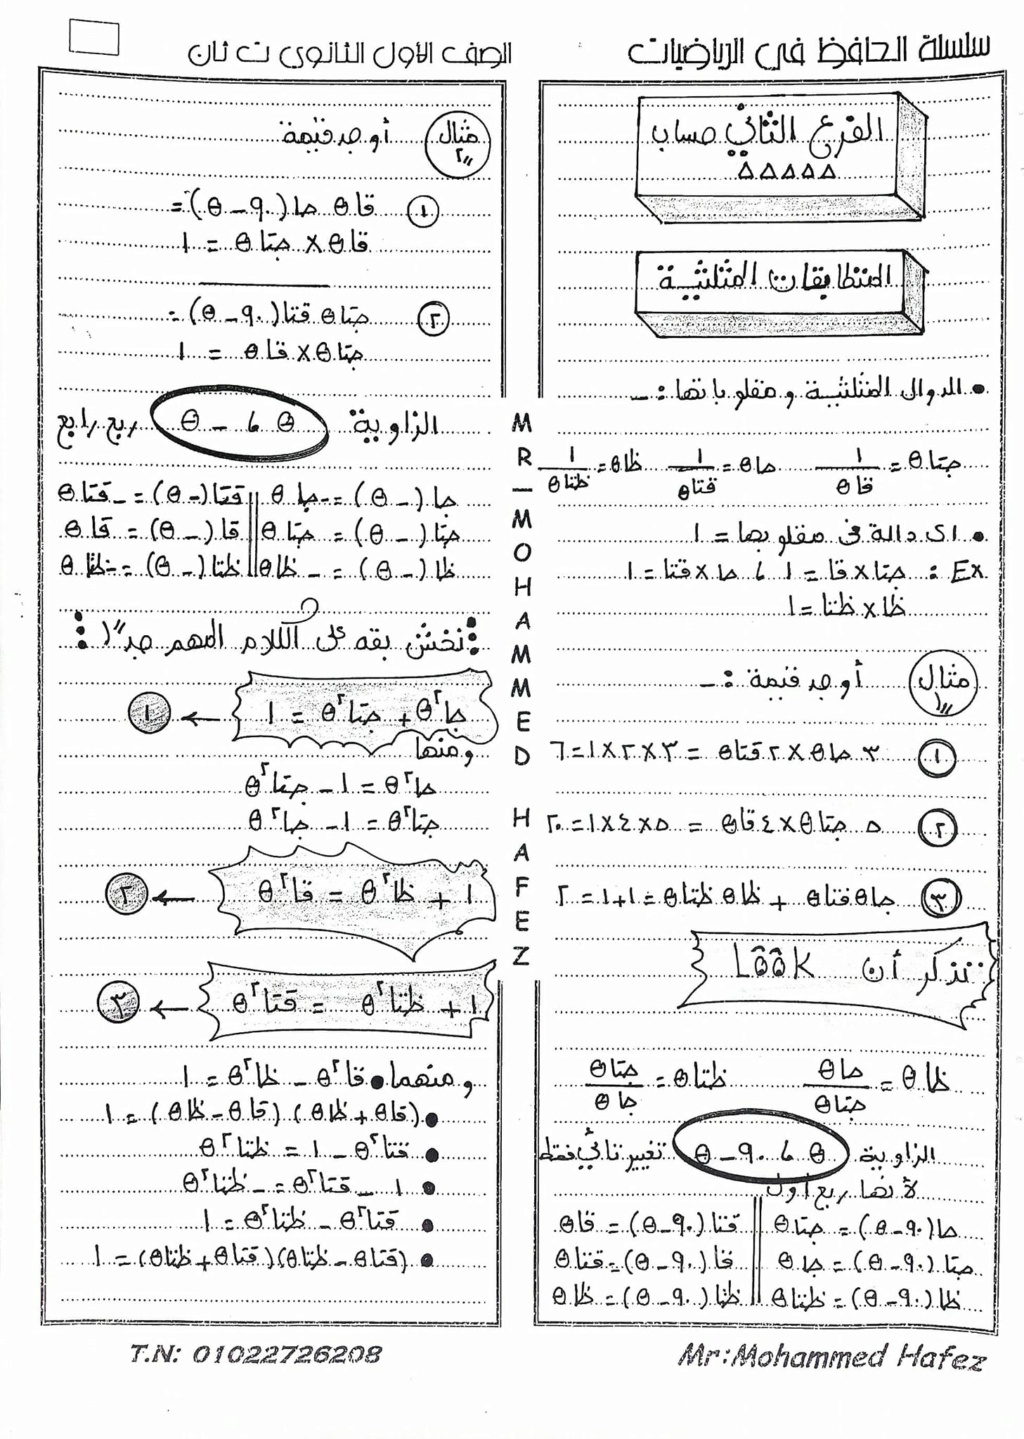 رياضيات - ملخص لاهم النقاط رياضيات للصف الأول الثانوي ترم ثاني أ/ محمد حافظ 3114